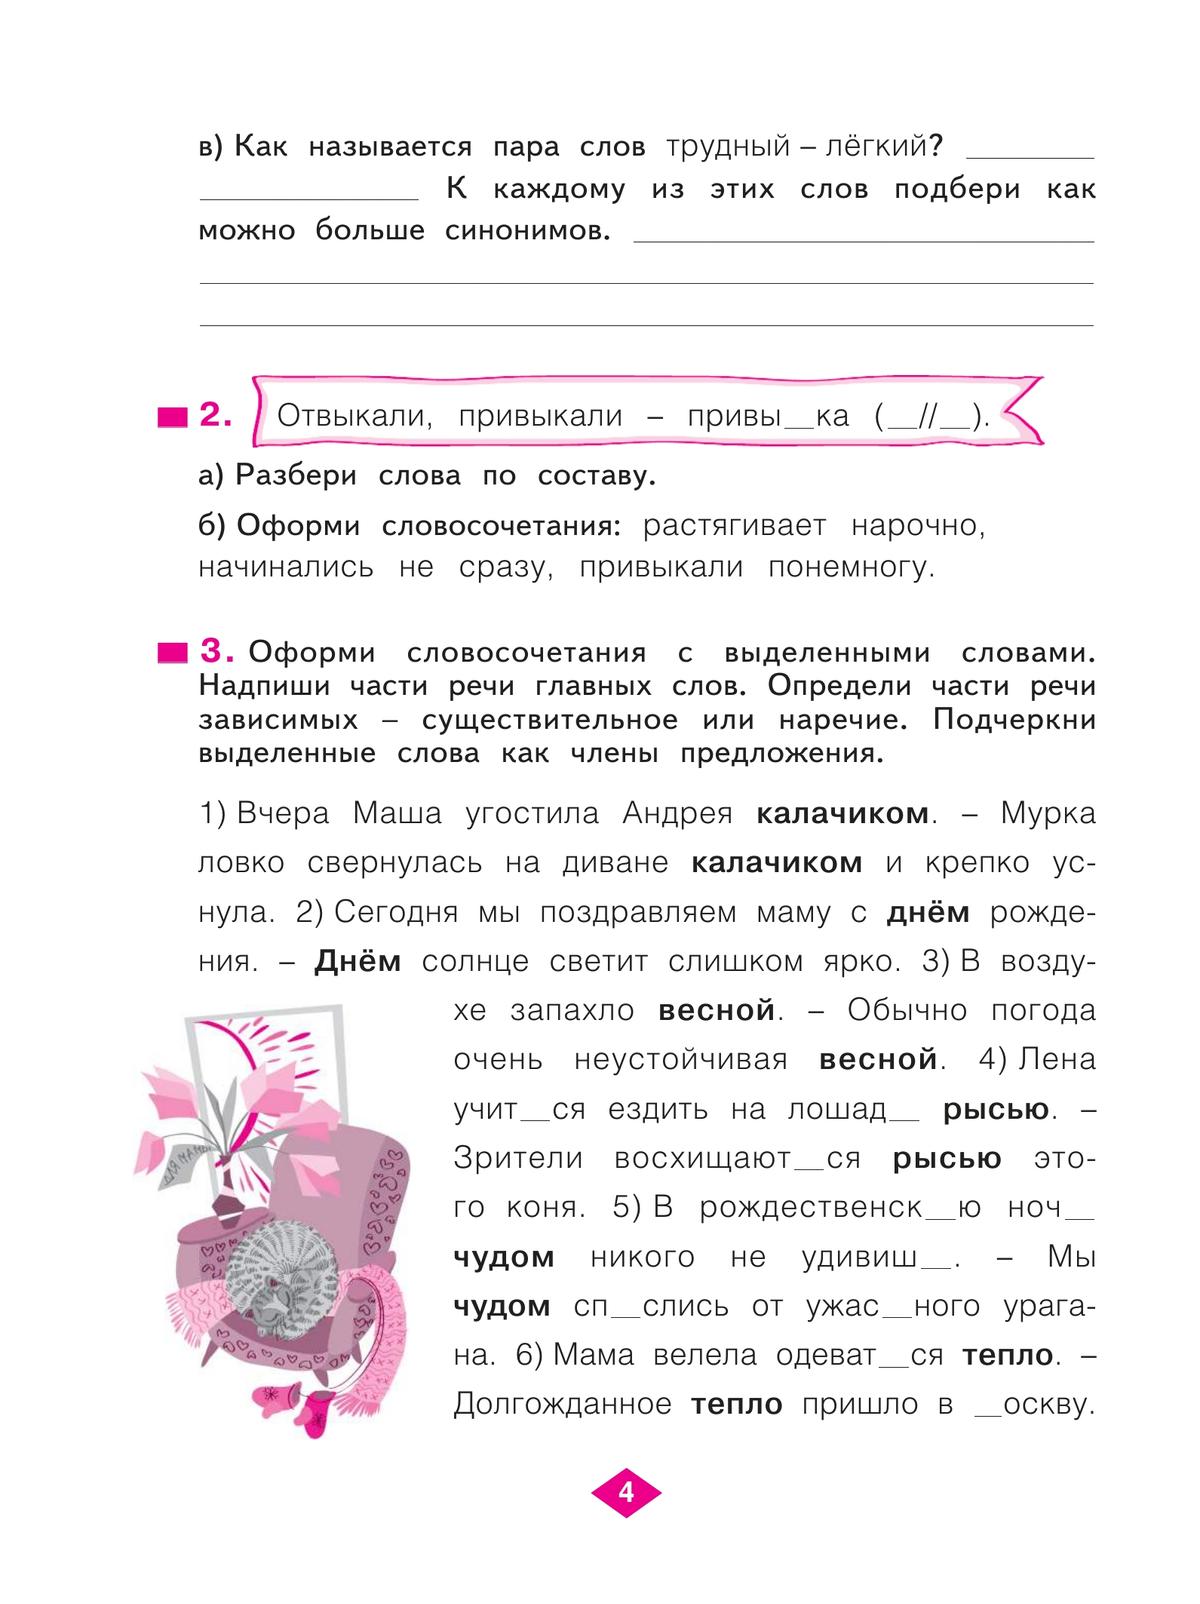 Русский язык. Рабочая тетрадь. 4 класс. В 4-х частях. Часть 4 6